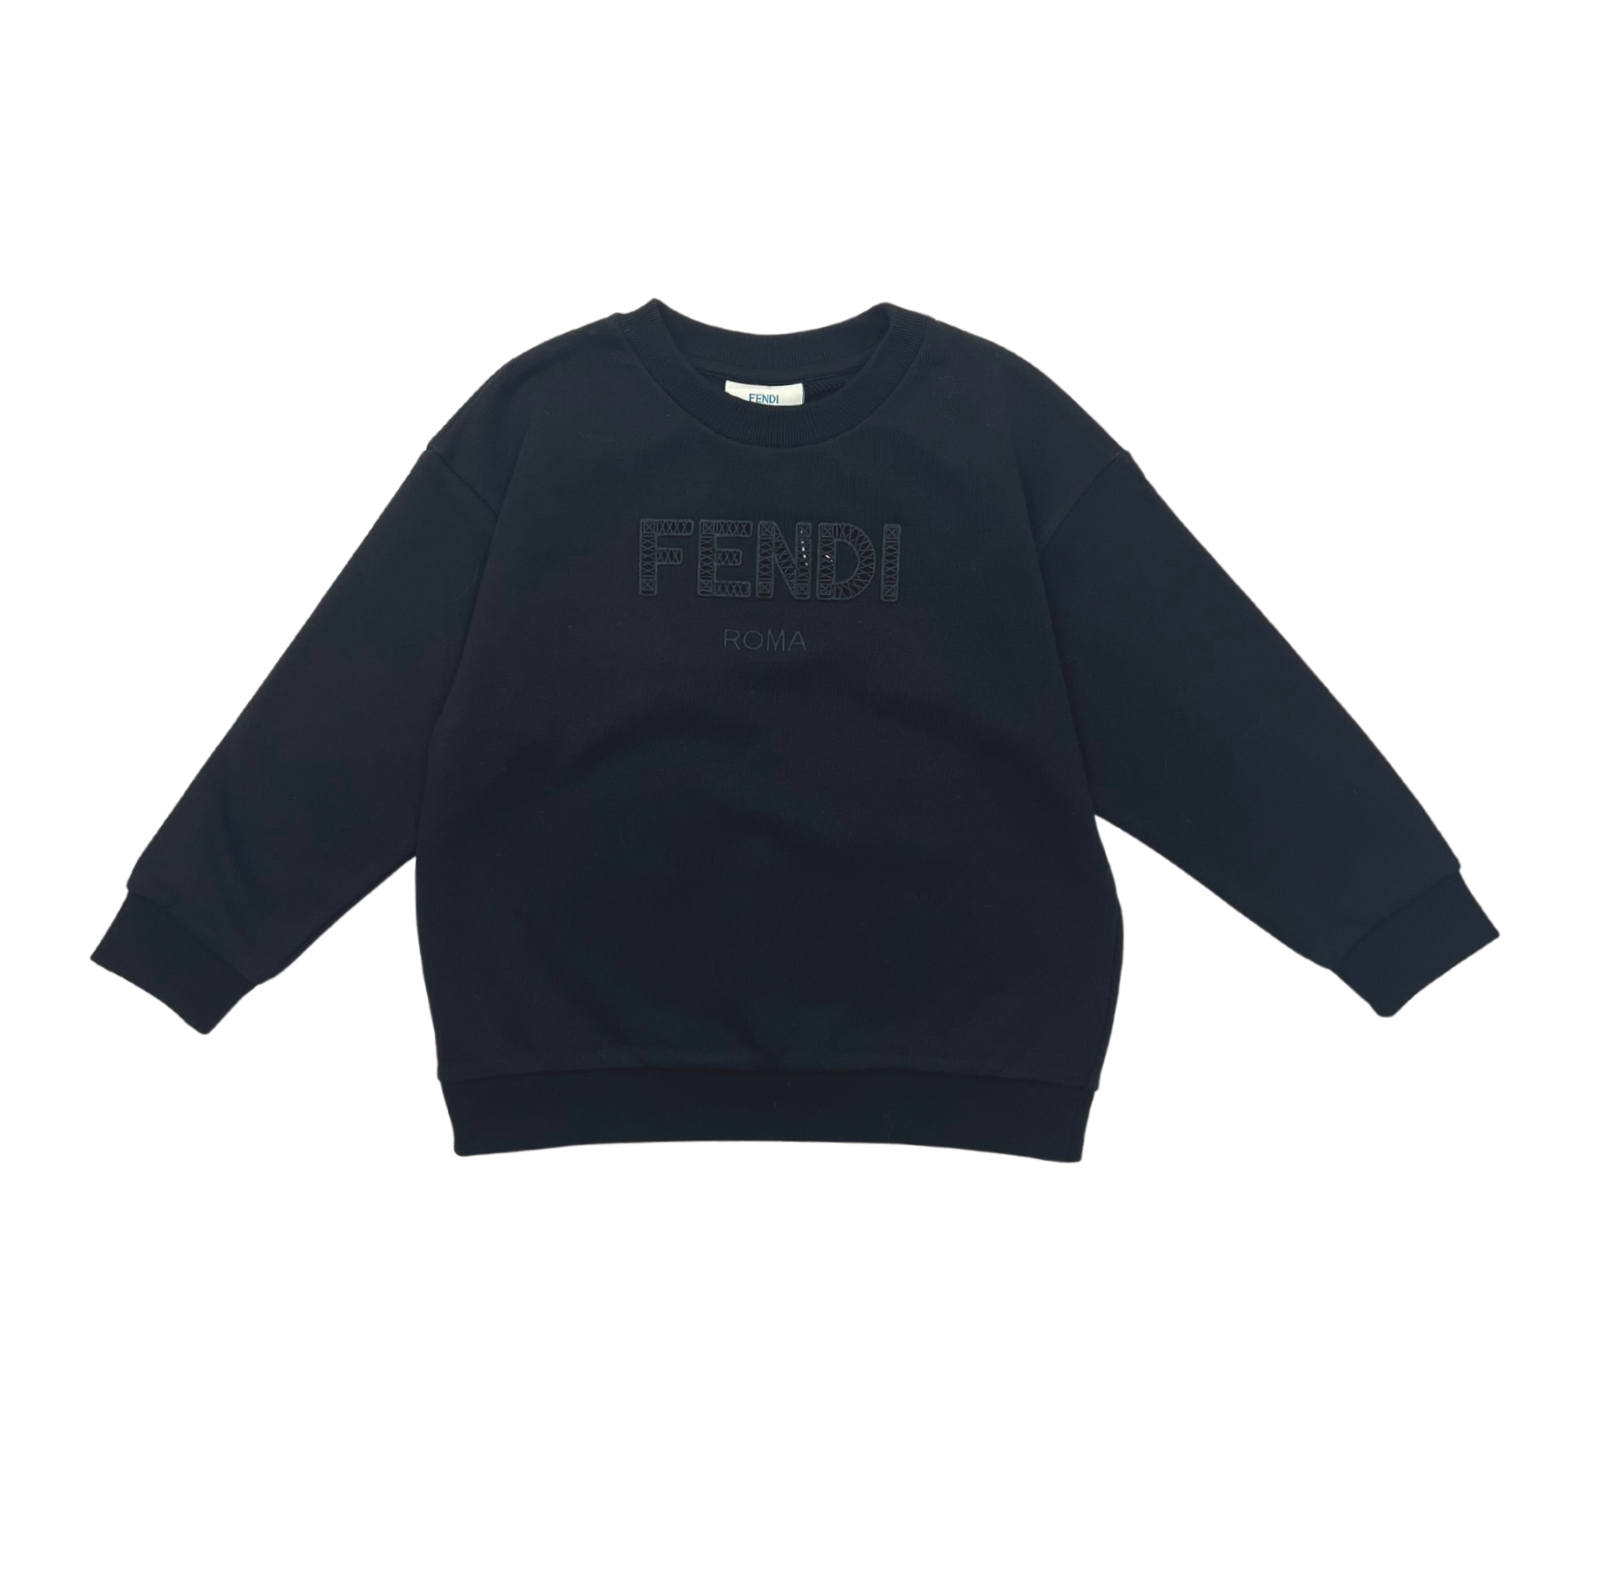 FENDI - Black sweatshirt with logo - 4 years